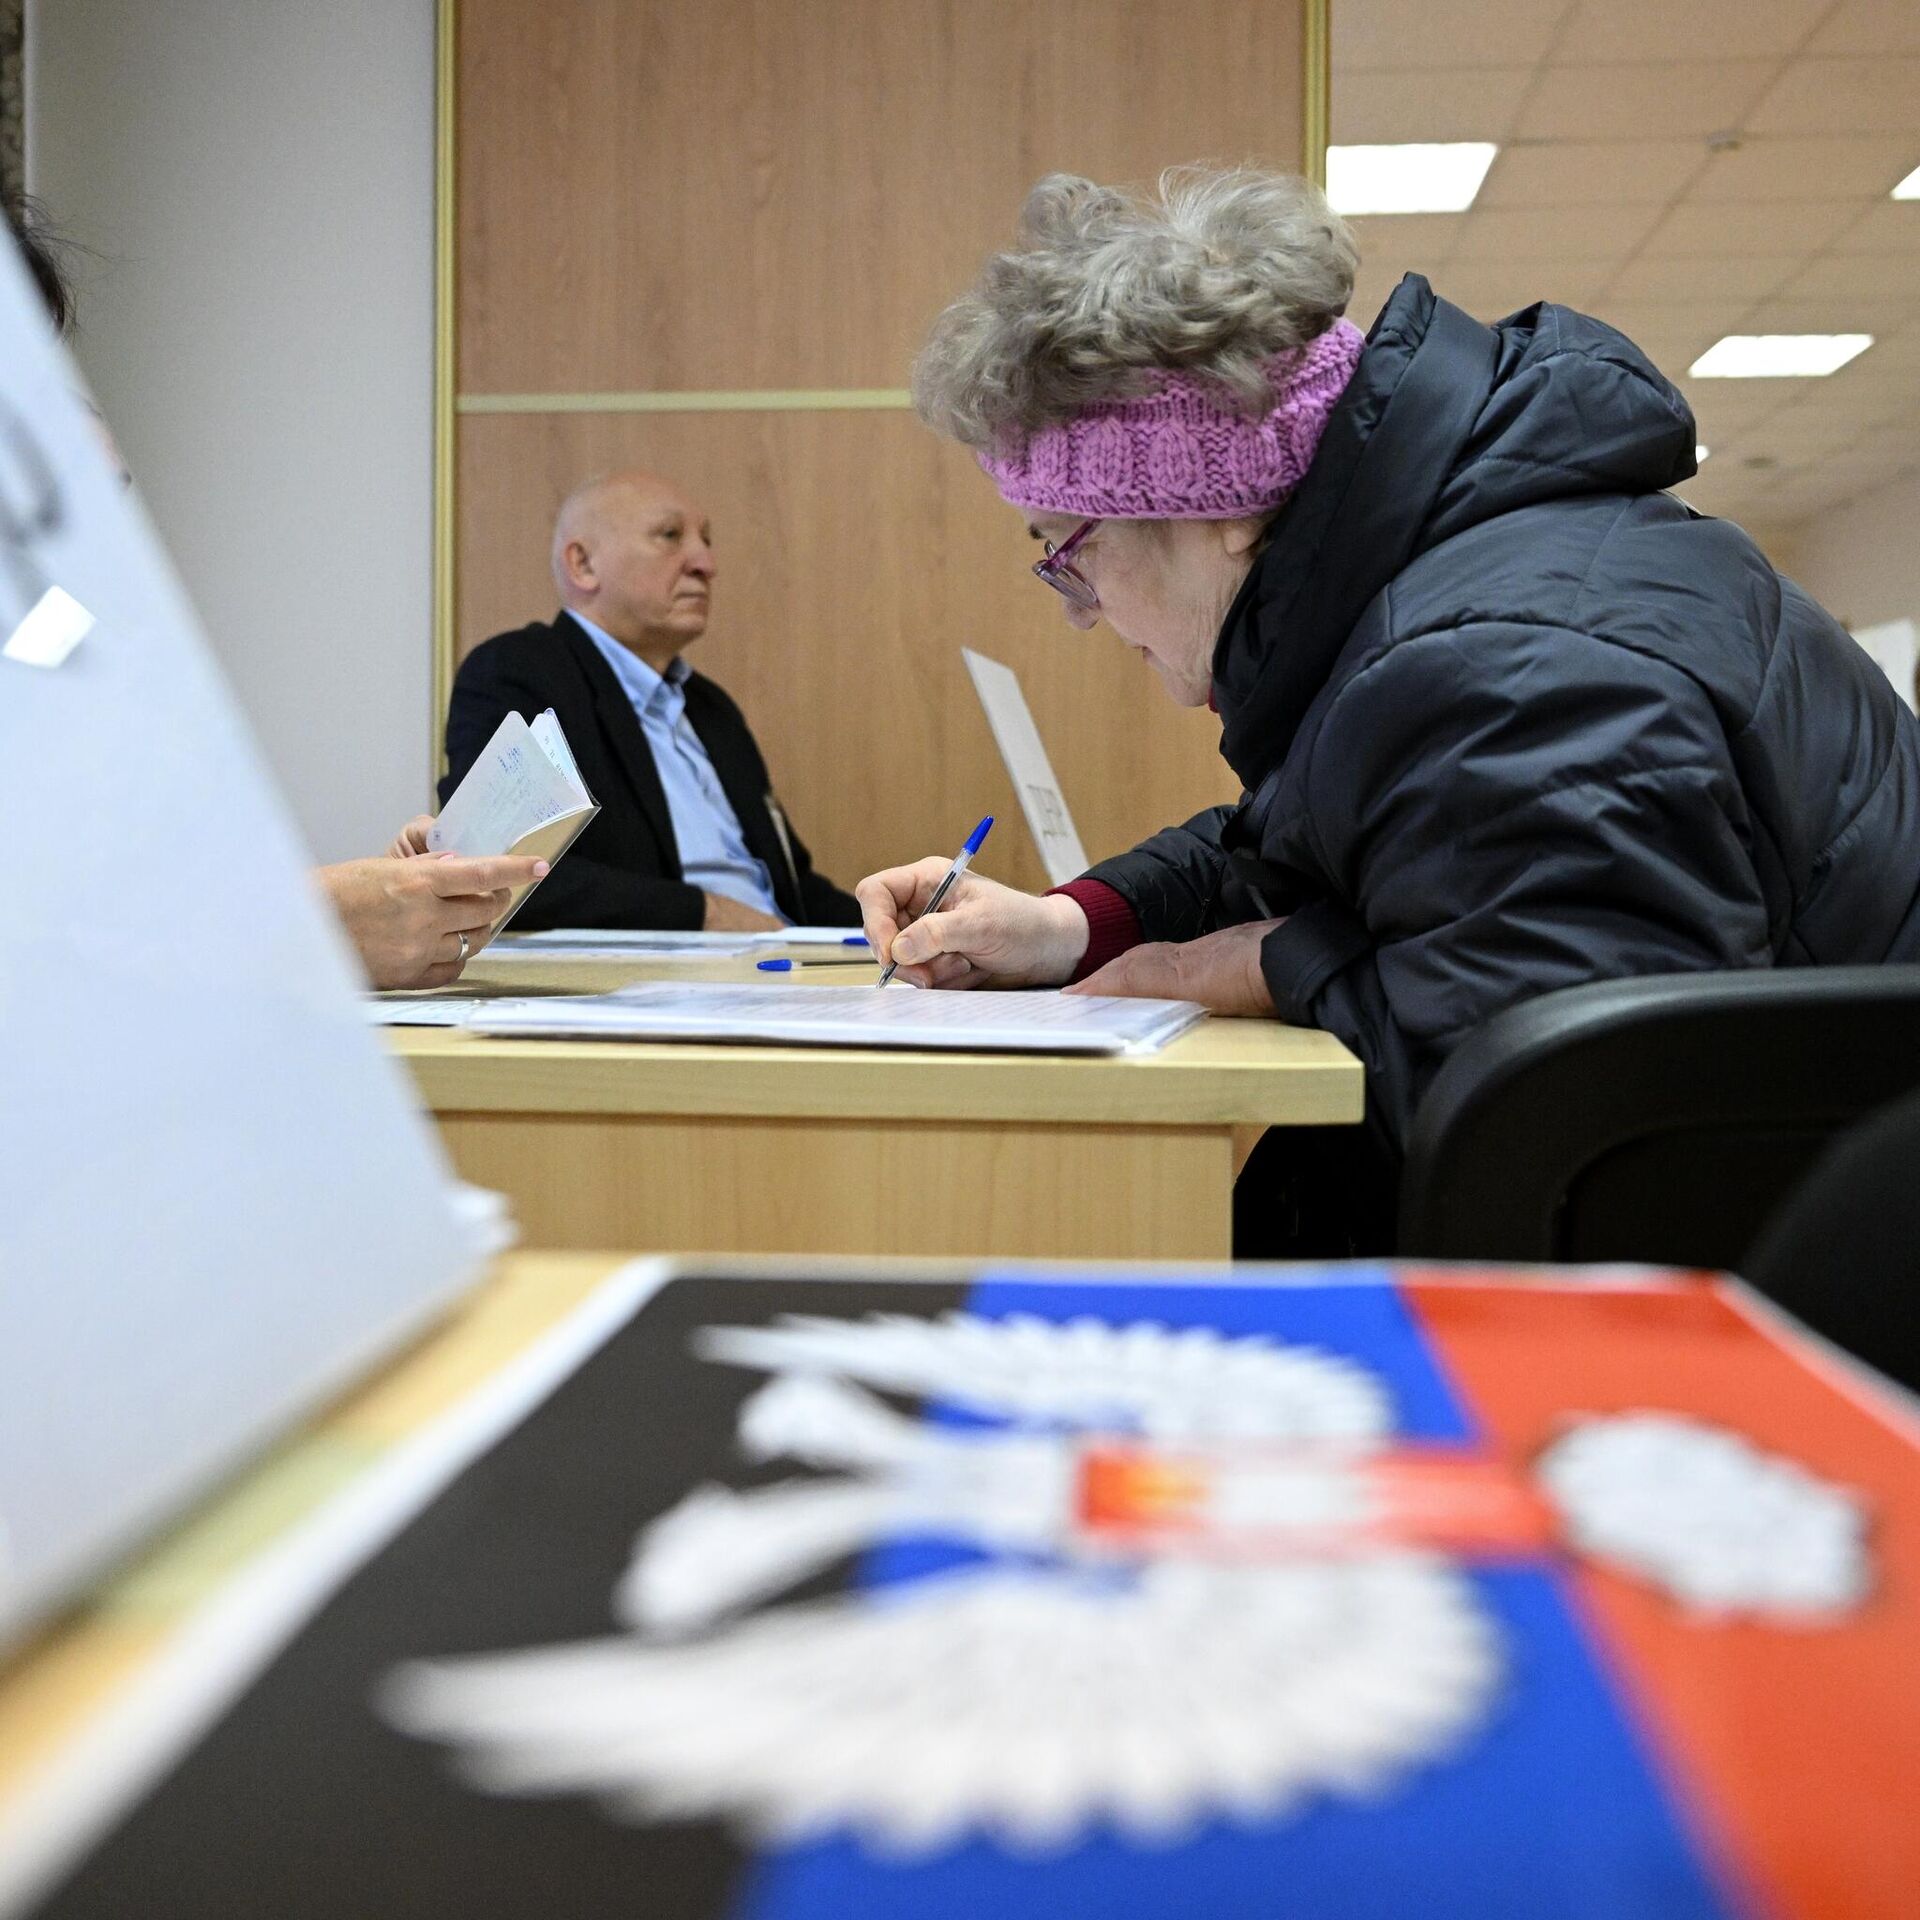 Проголосовали за присоединение. Референдум в ЛНР И ДНР 2022. Референдум Донбасс 2022. Голосование на выборах. Явка избирателей.